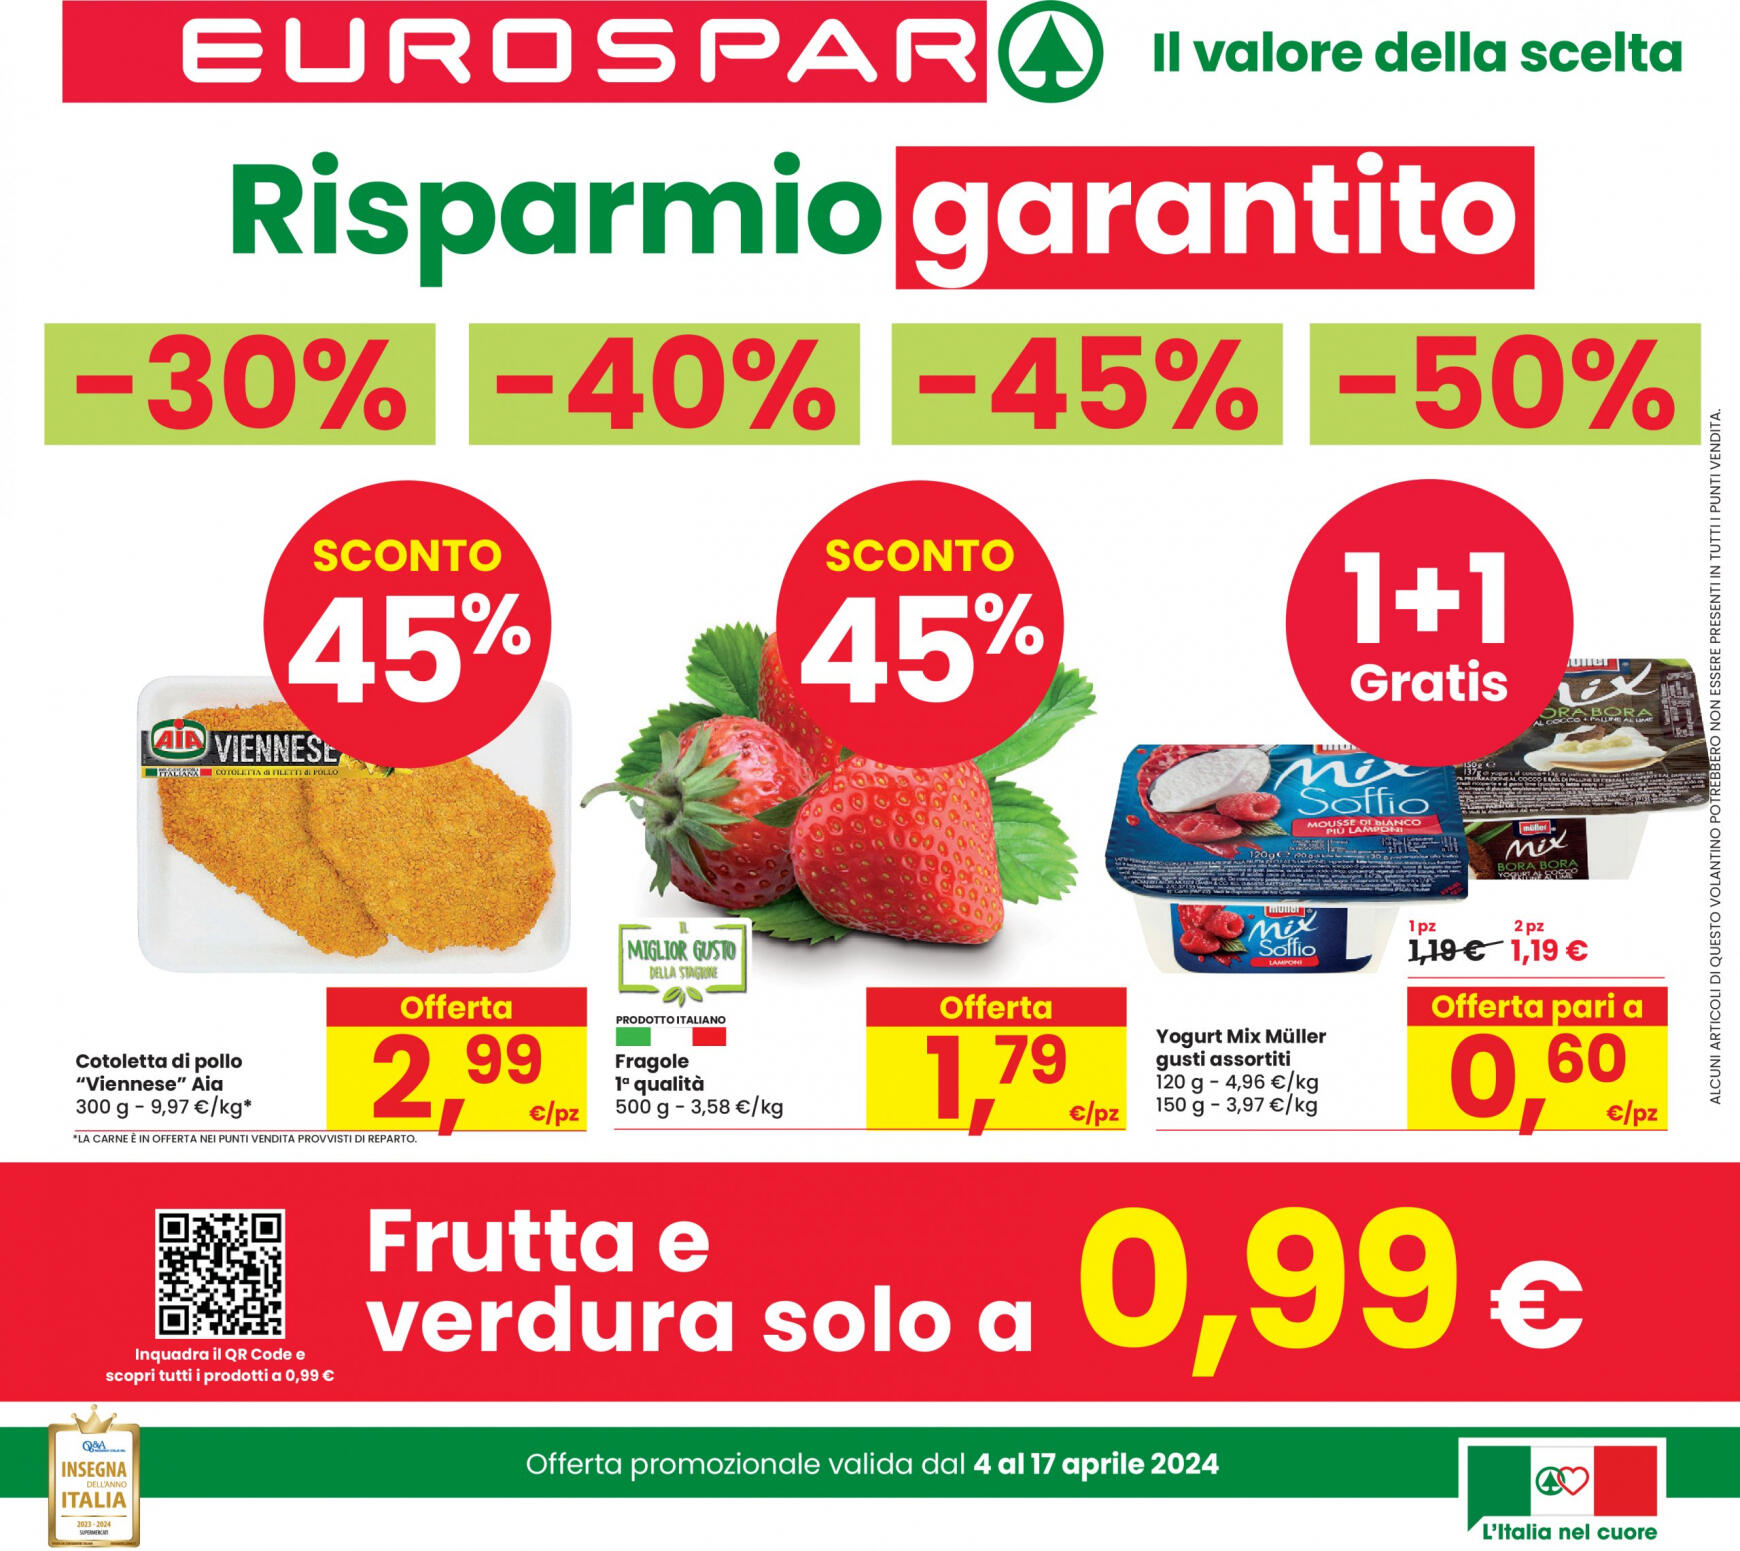 eurospar - Nuovo volantino Eurospar 04.04. - 17.04.